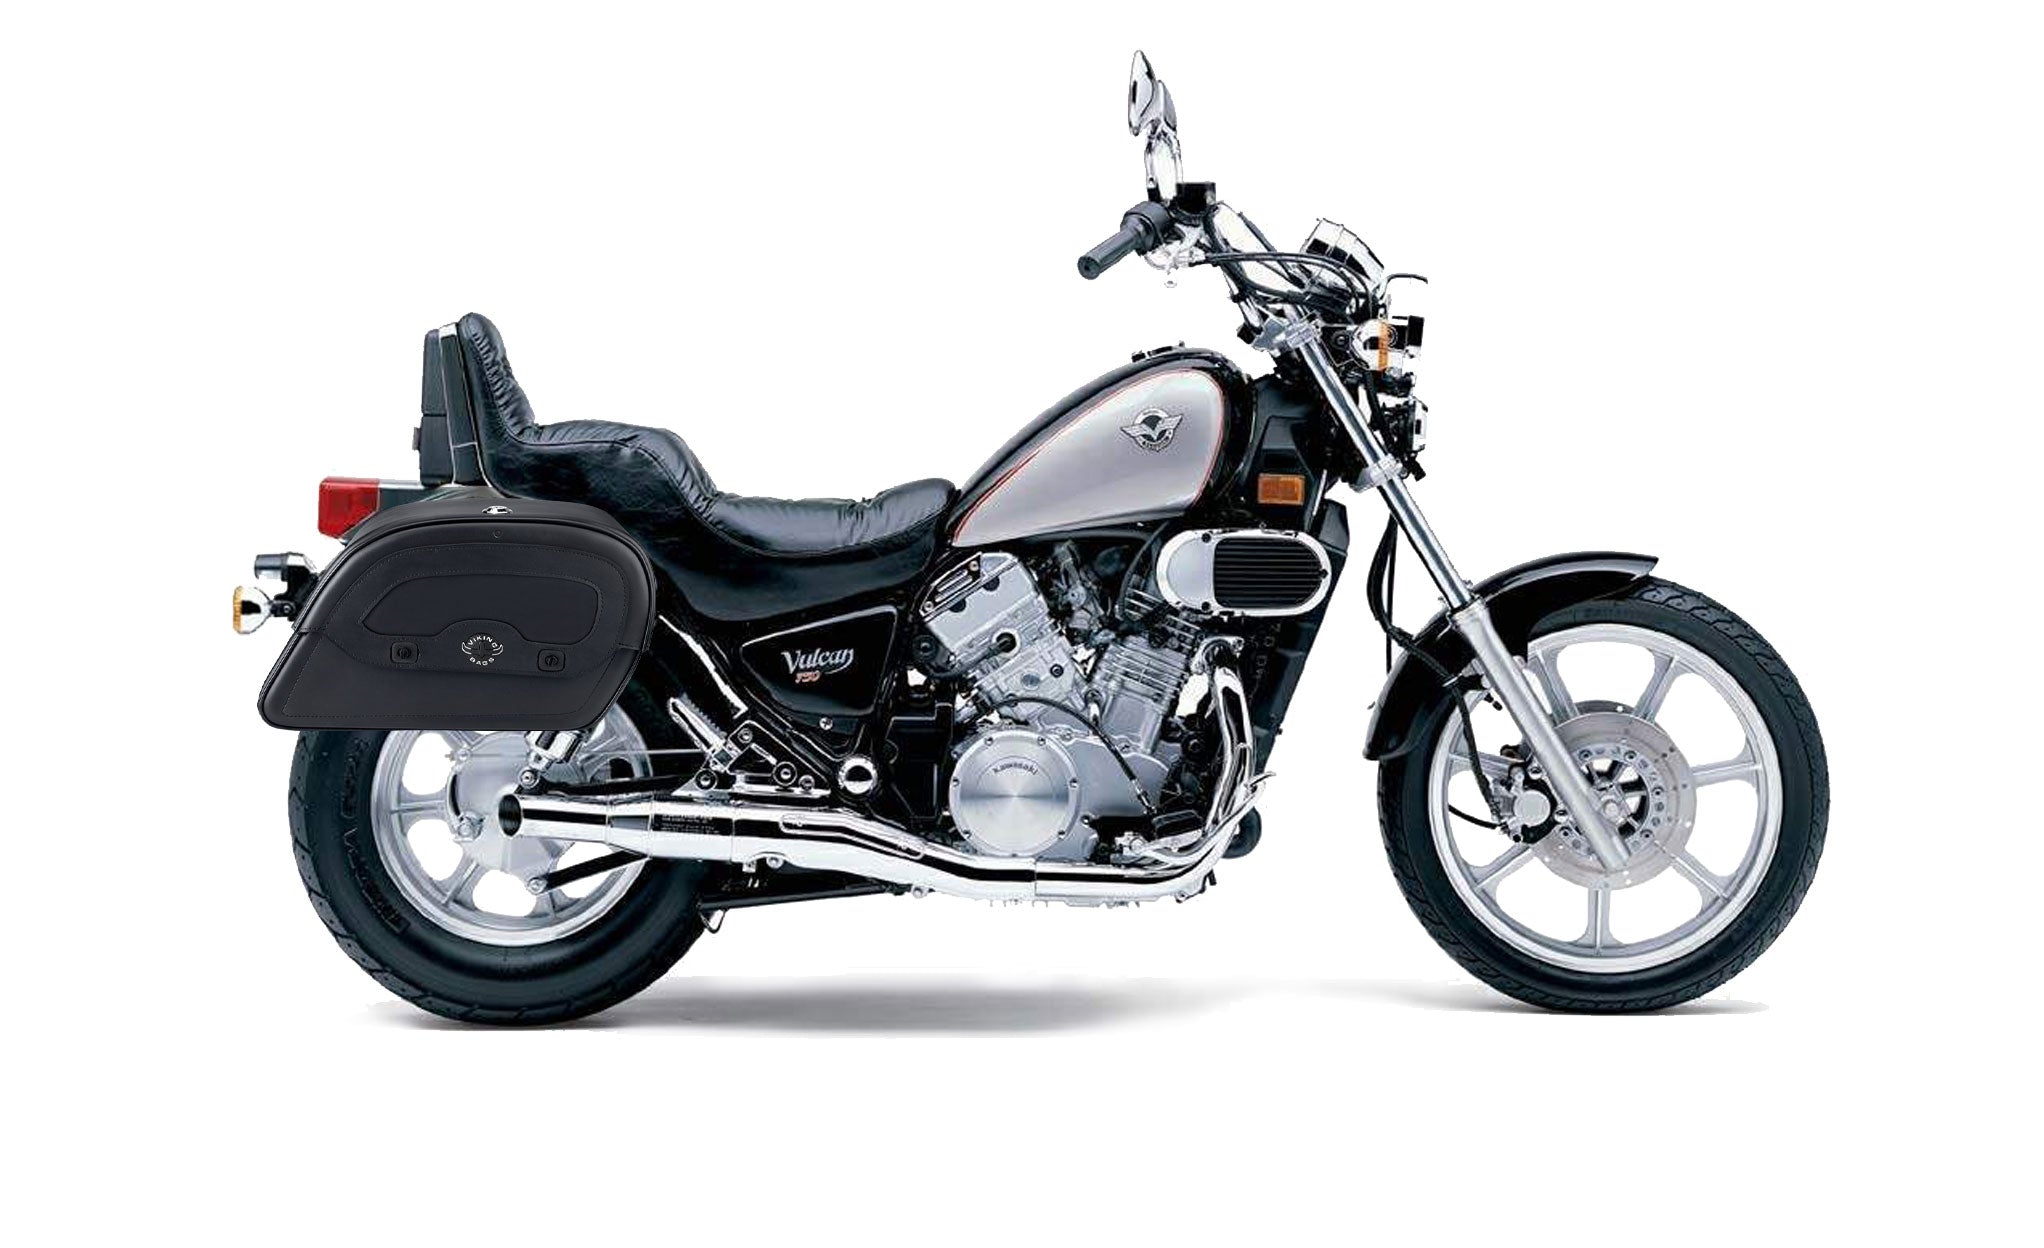 Viking Warrior Large Kawasaki Vulcan 750 Vn750 Leather Motorcycle Saddlebags on Bike Photo @expand